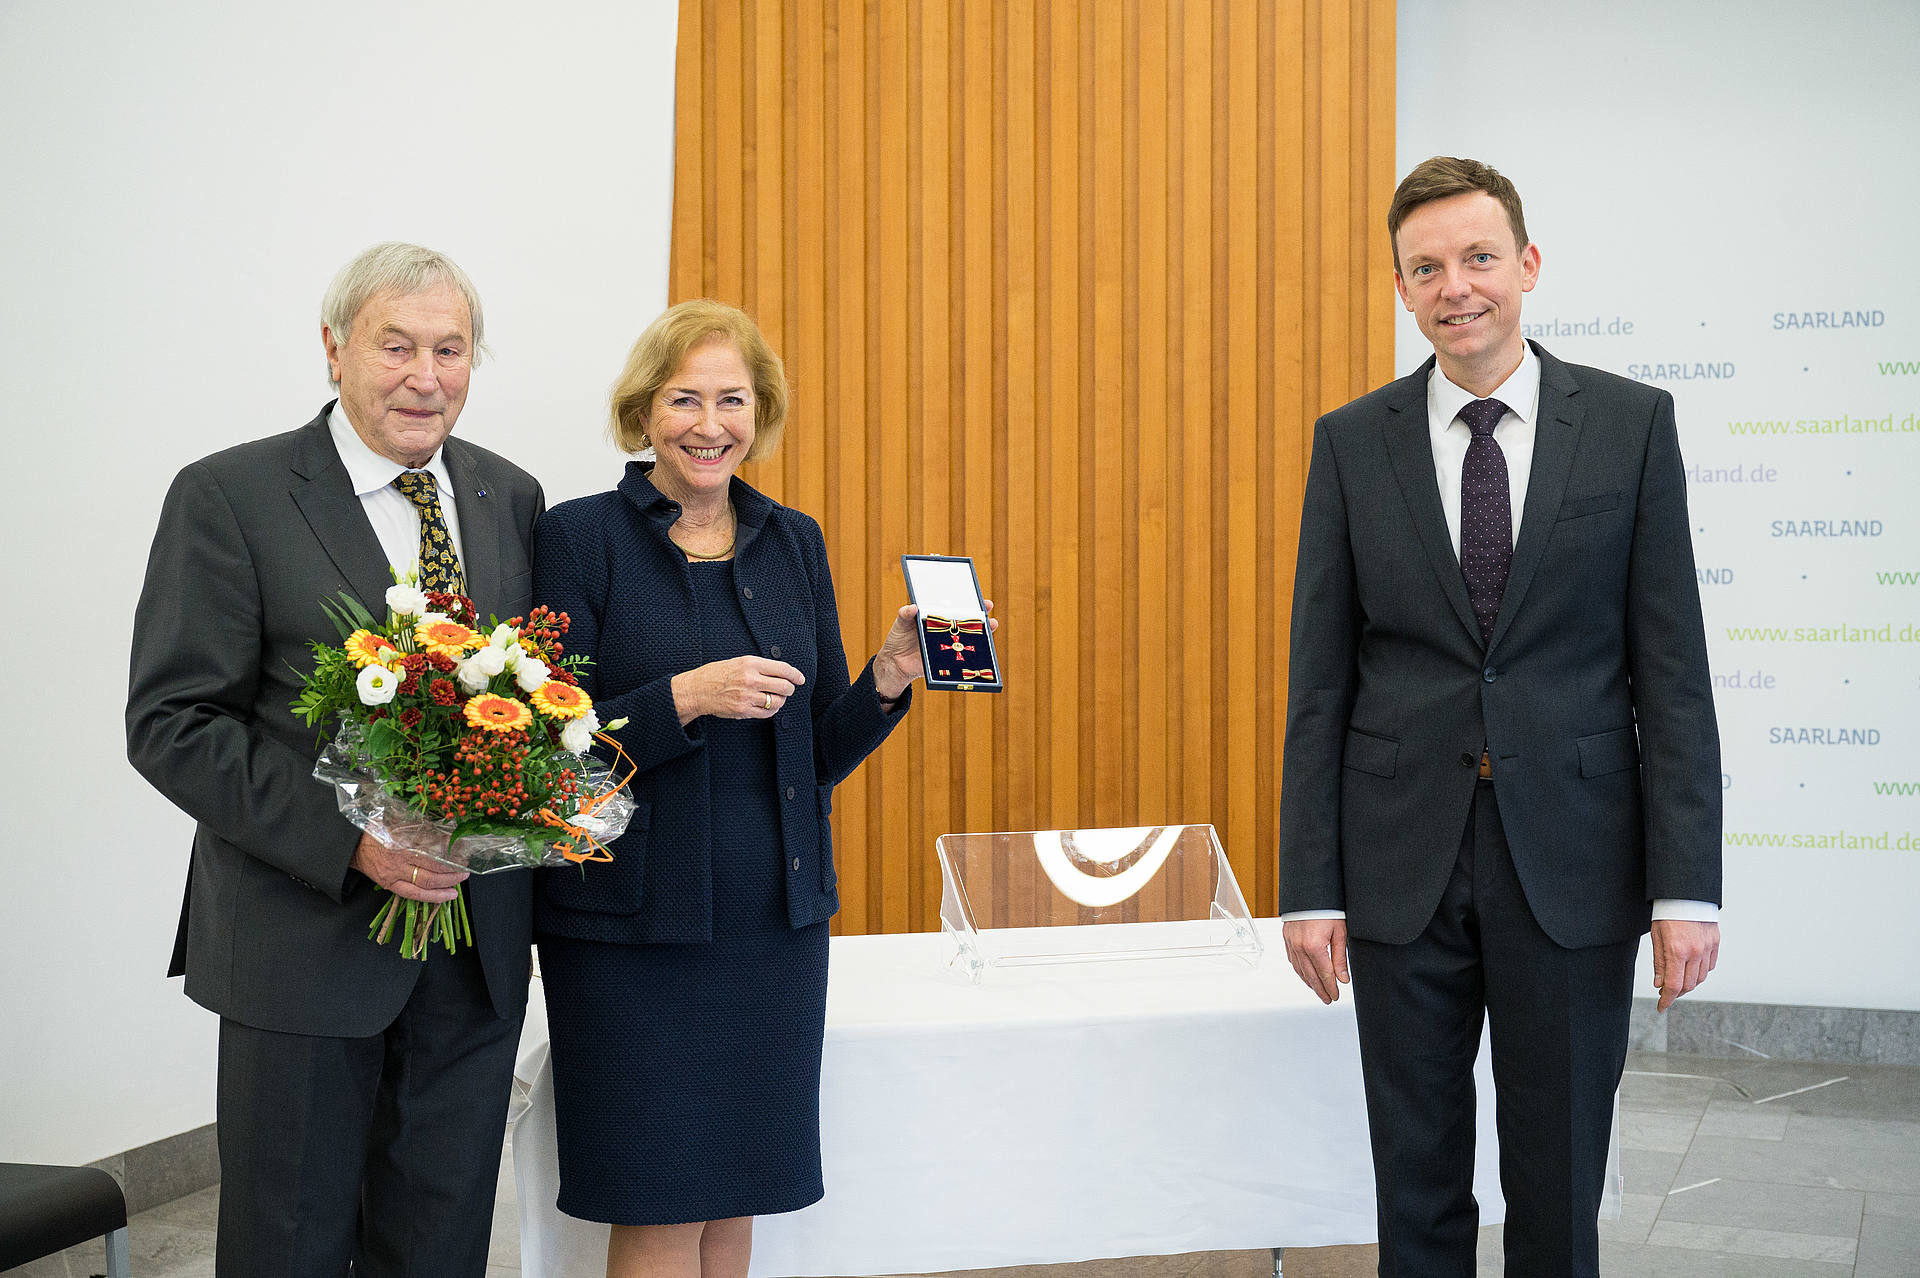 Prof. Dr. Patricia Oster-Stierle hält den soeben verliehene Bundesverdienstorden. Neben ihr Prof. Dr. Karlheinz Stierle mit einem Blumenstrauß in der Hand. Rechts steht Tobias Hans.